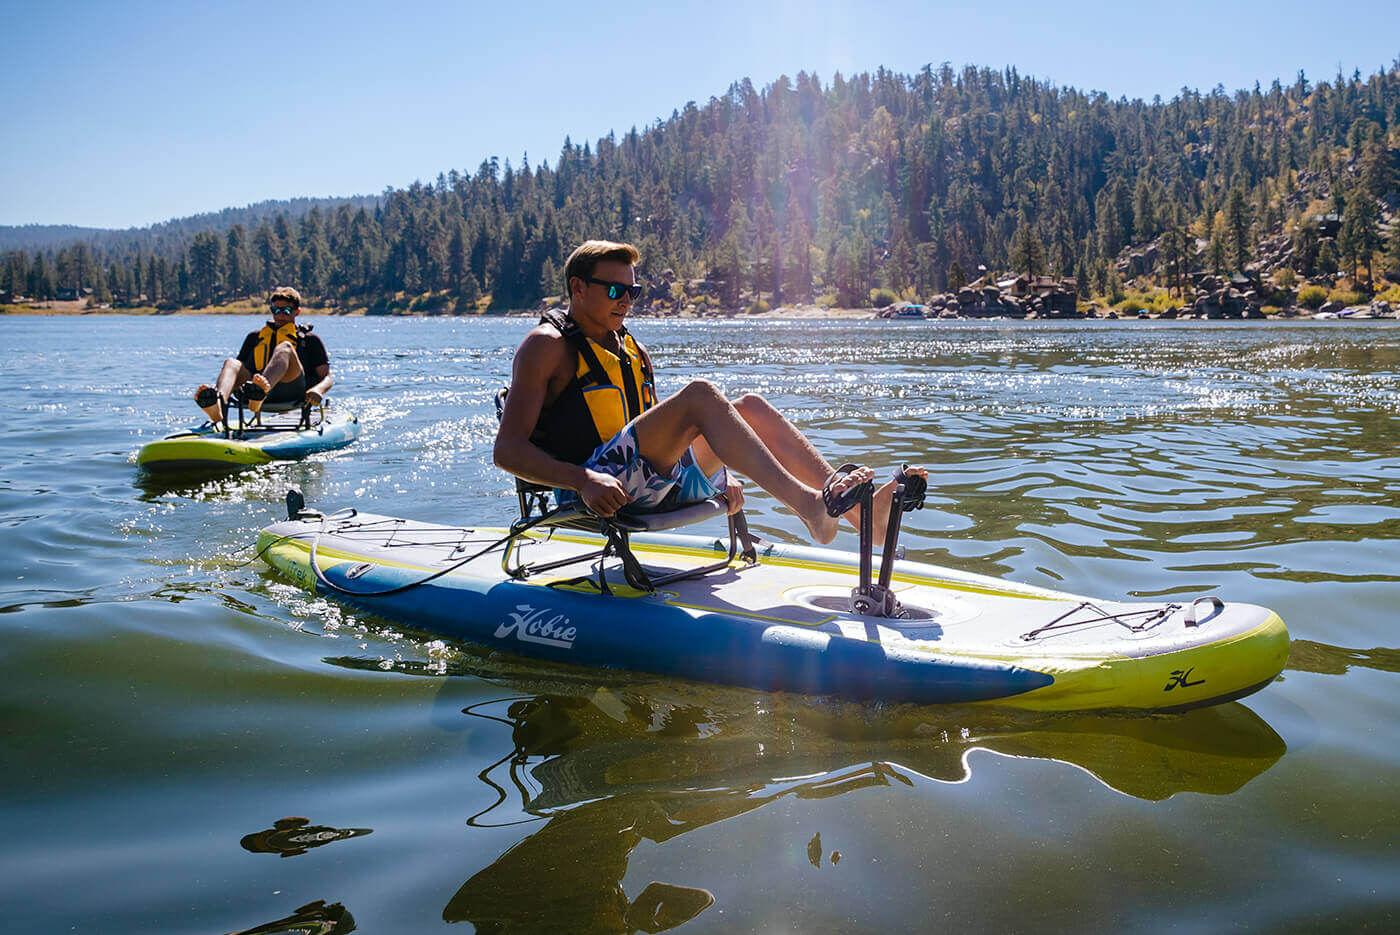 Hobie Mirage iTrek 11 Inflatable Kayak On The Water sku: